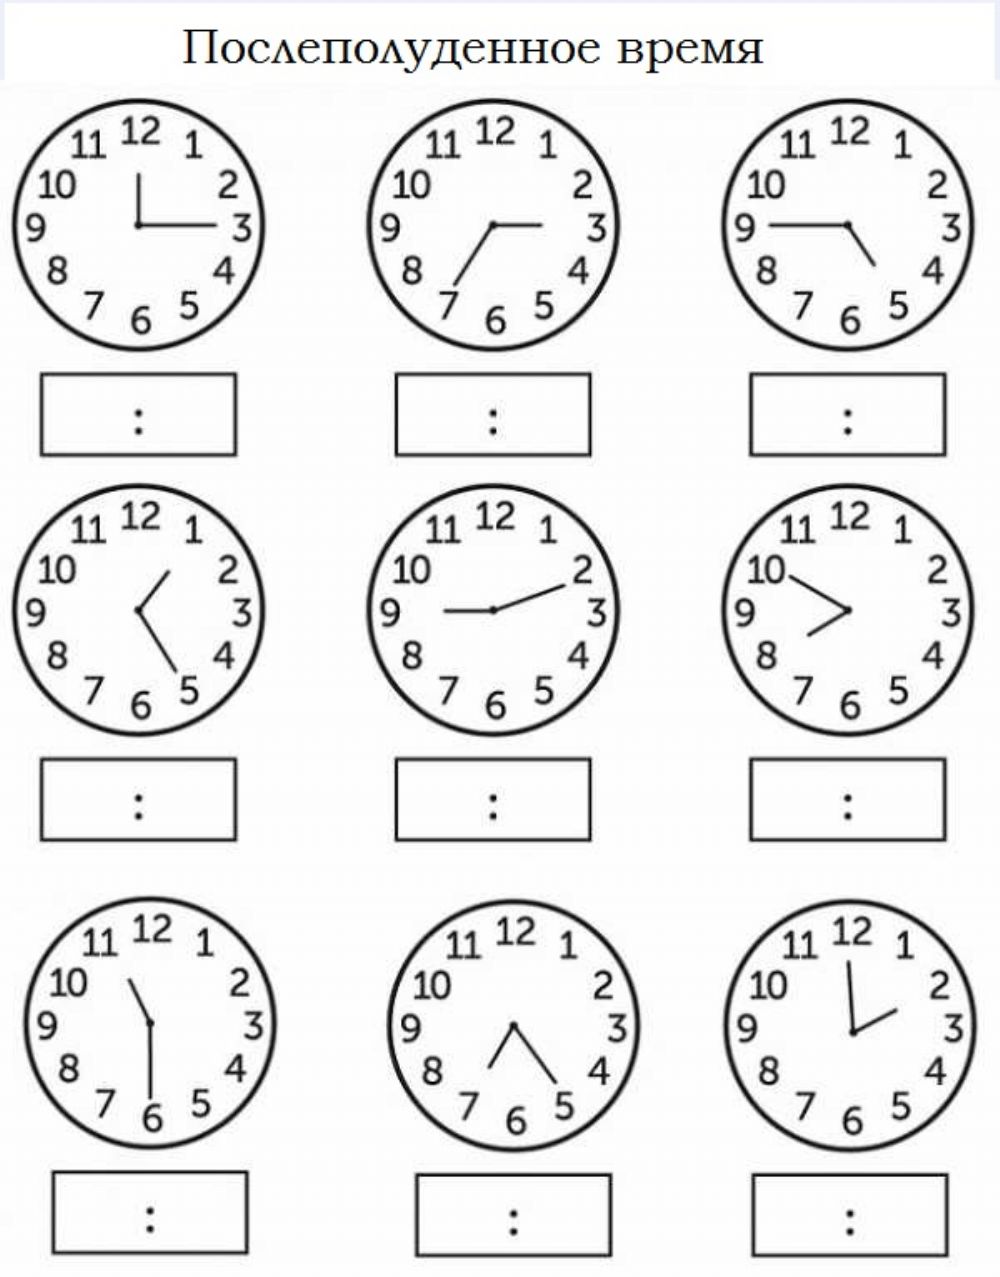 Как определить часы